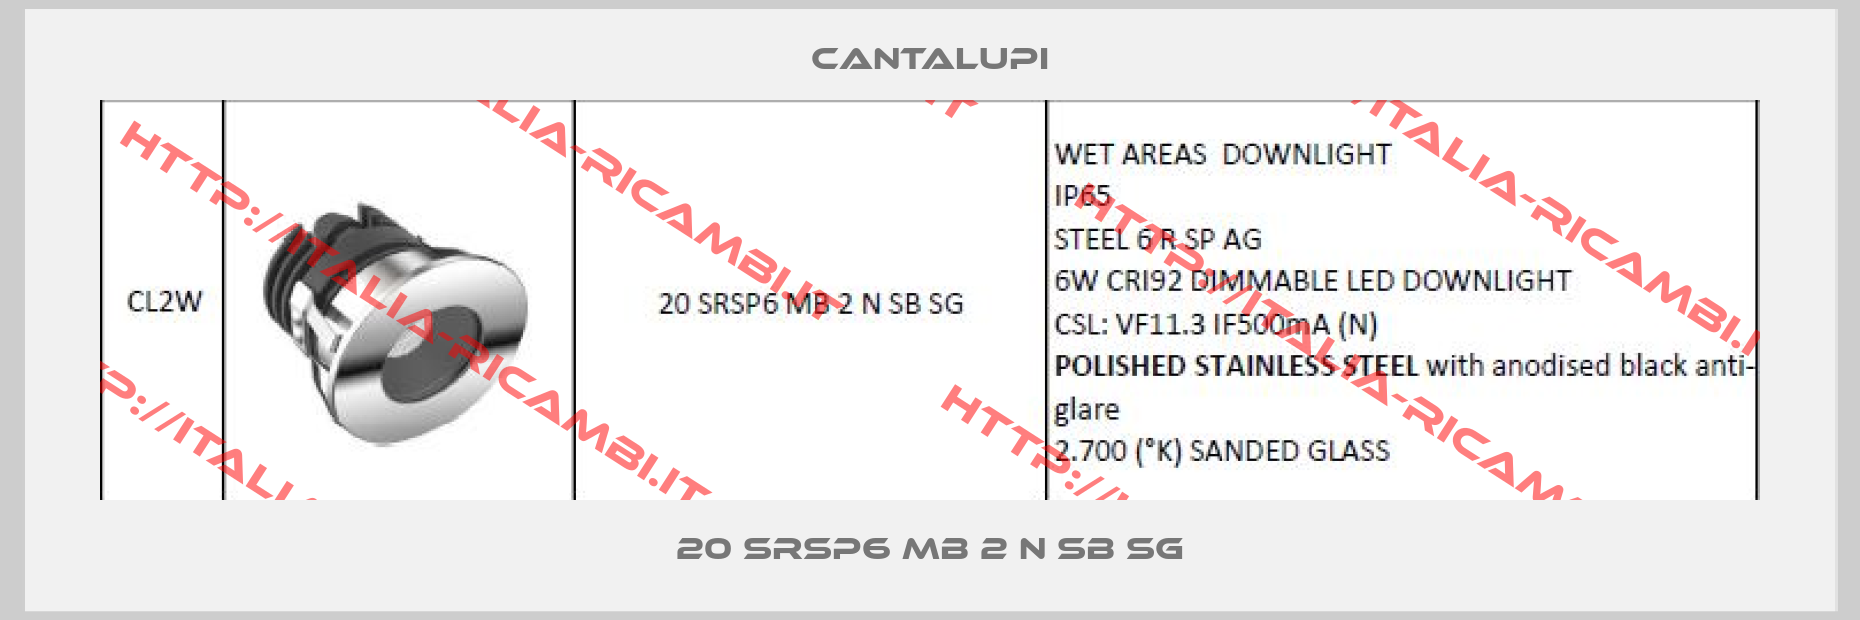 CANTALUPI-20 SRSP6 MB 2 N SB SG